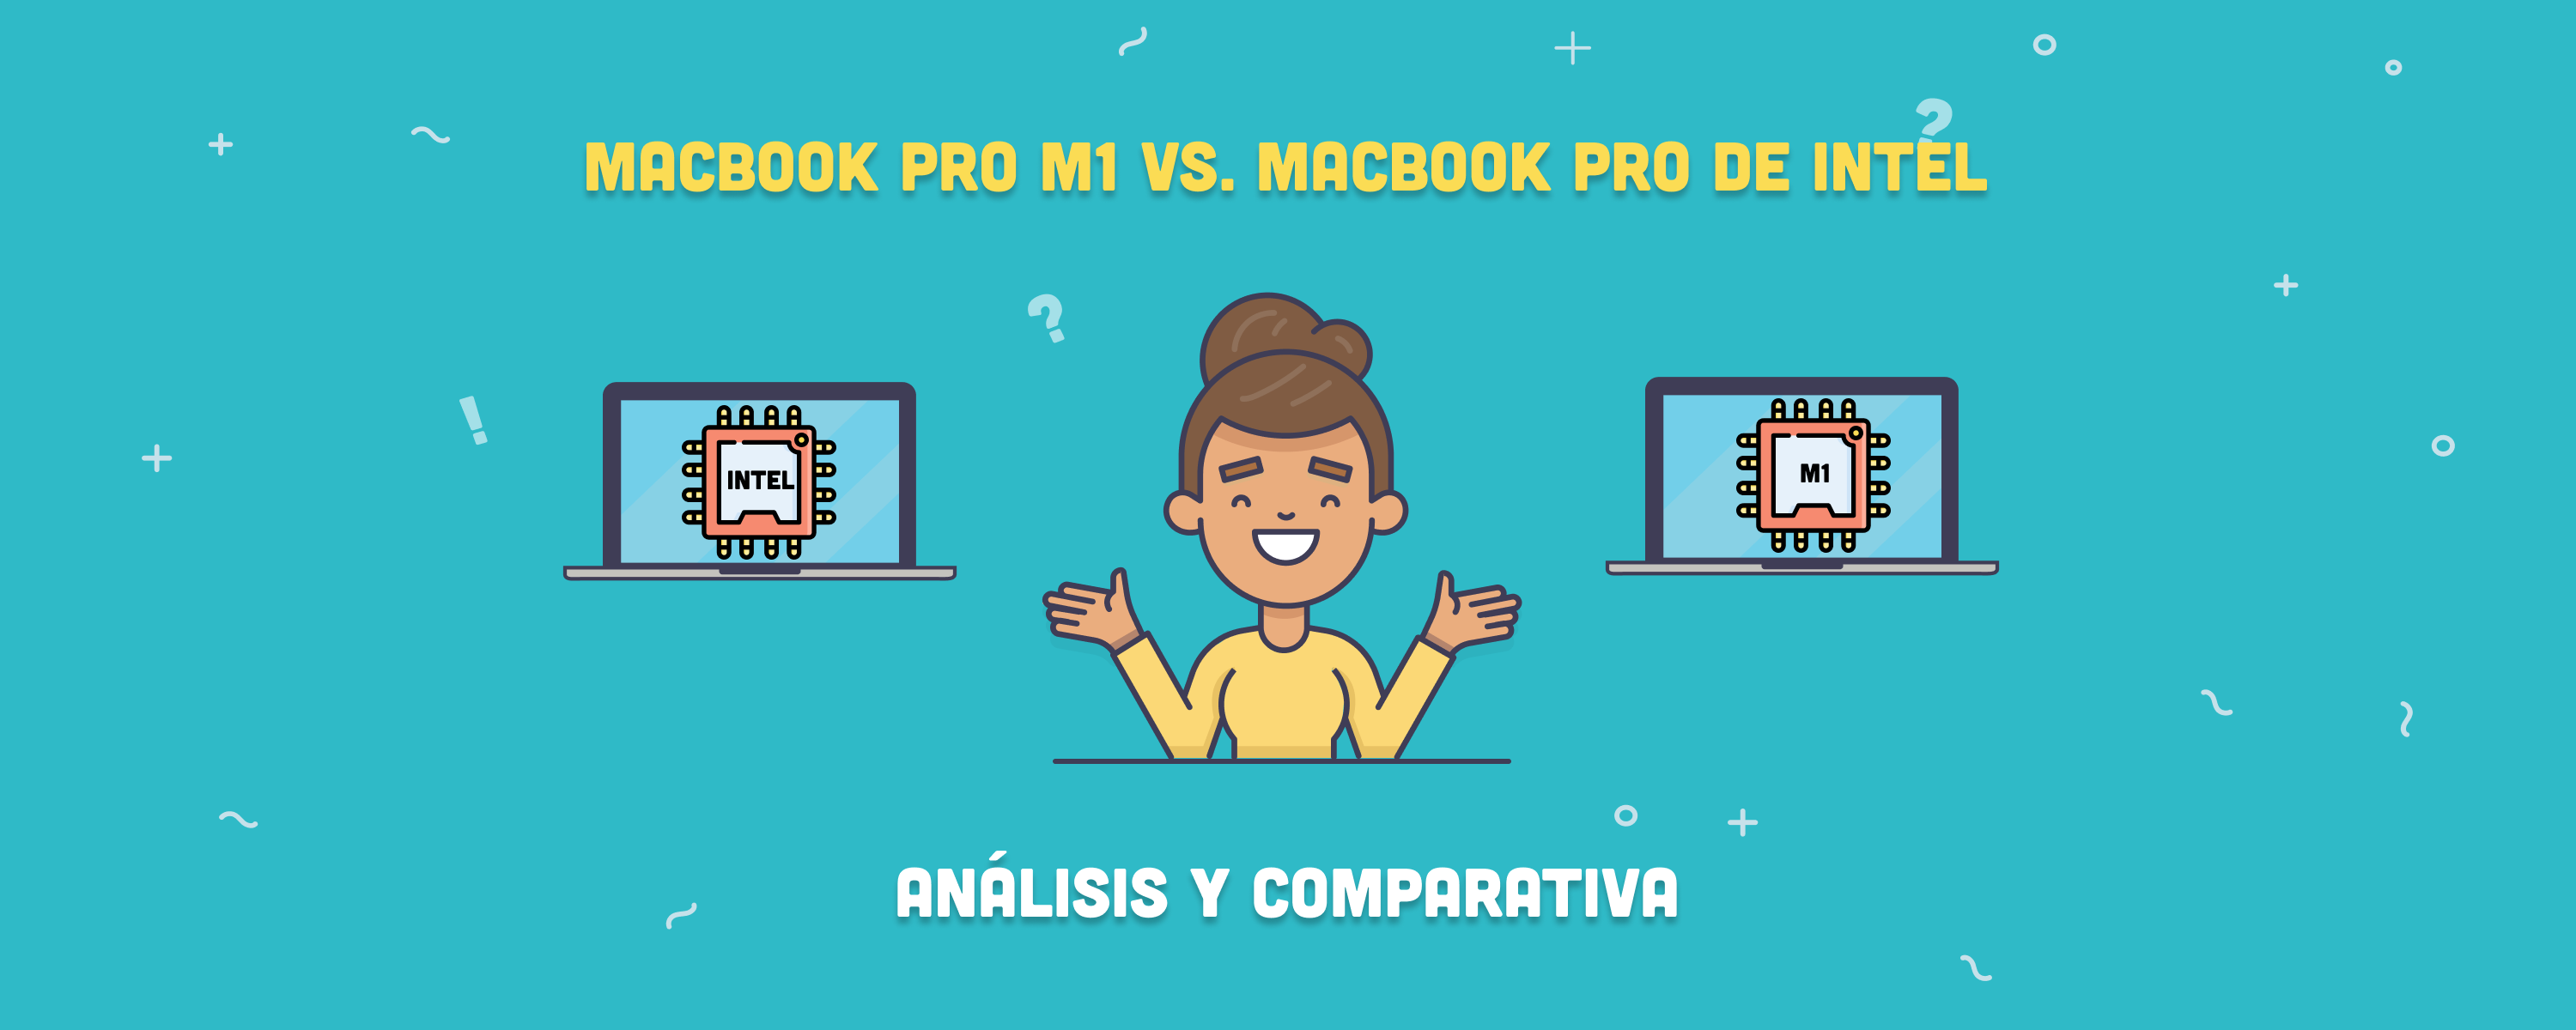 MacBook Pro M1 vs. MacBook Pro de Intel: análisis y comparativa